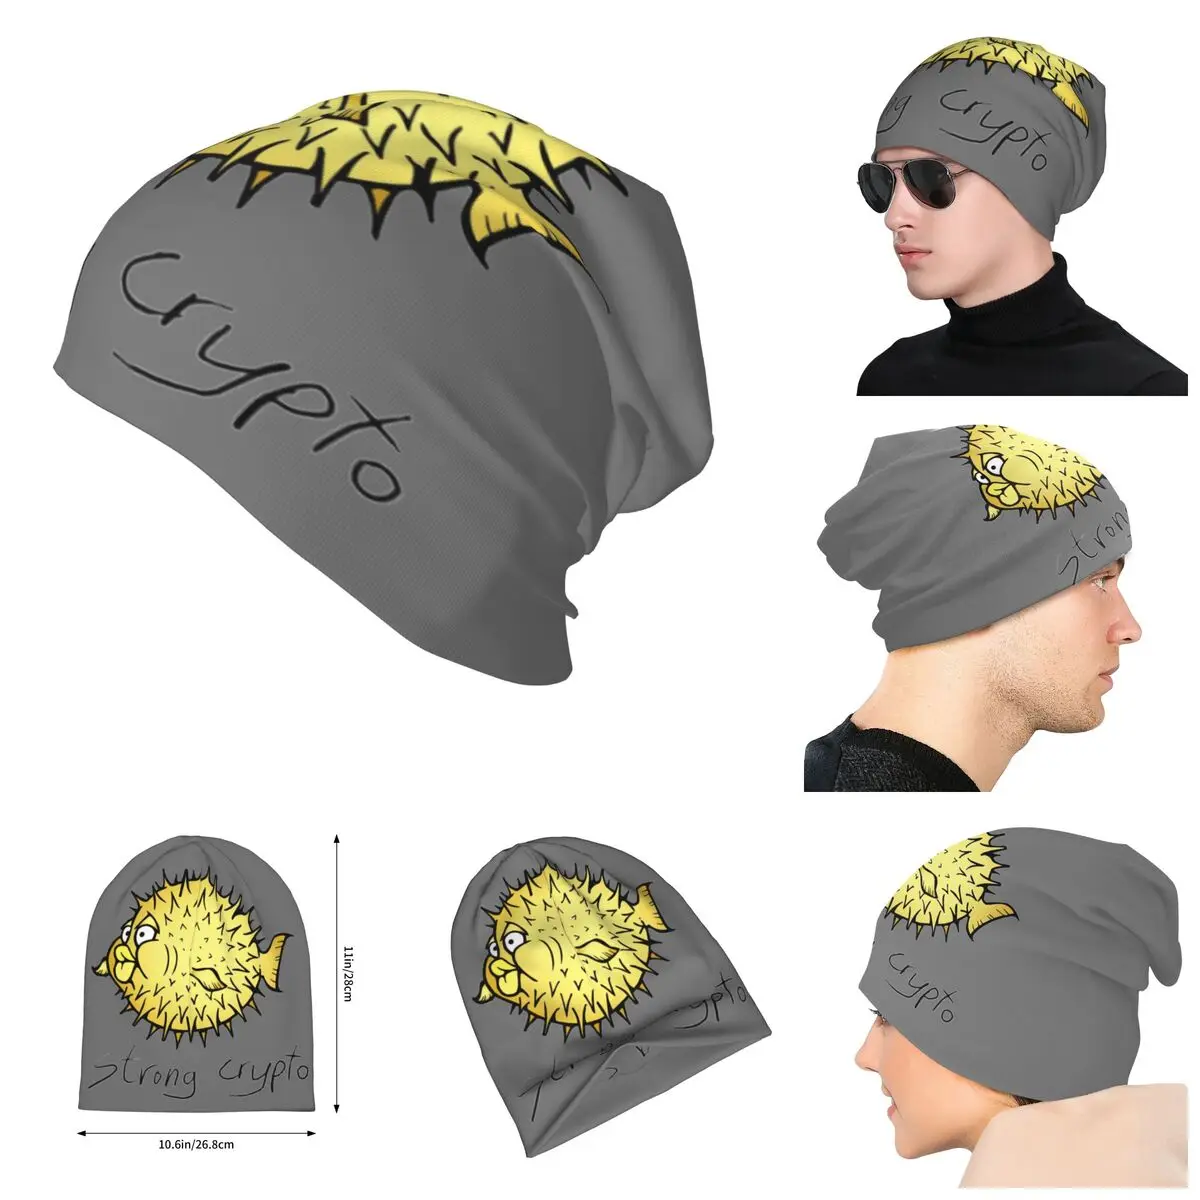 

Взрослые мужские вязаные шляпы OpenBSD криптовалюты шляпы солнцезащитные шляпы Смешная трикотажная шапка в стиле унисекс